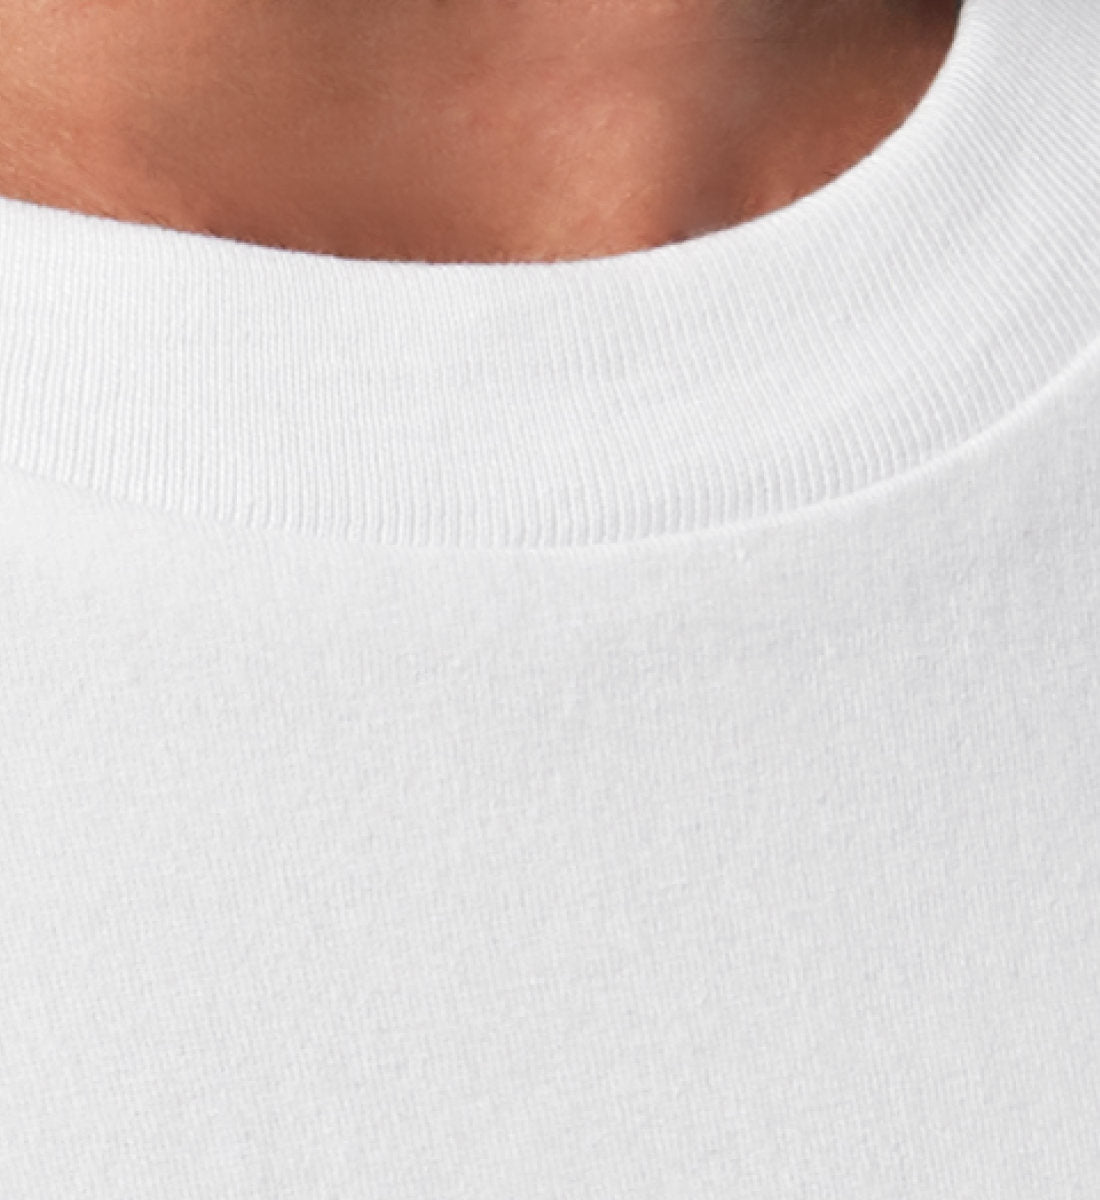 Weißes T-Shirt Unisex Relaxed Fit für Frauen und Männer bedruckt mit dem Design der Roger Rockawoo Clothing Kollektion we are not alone french bulldogge